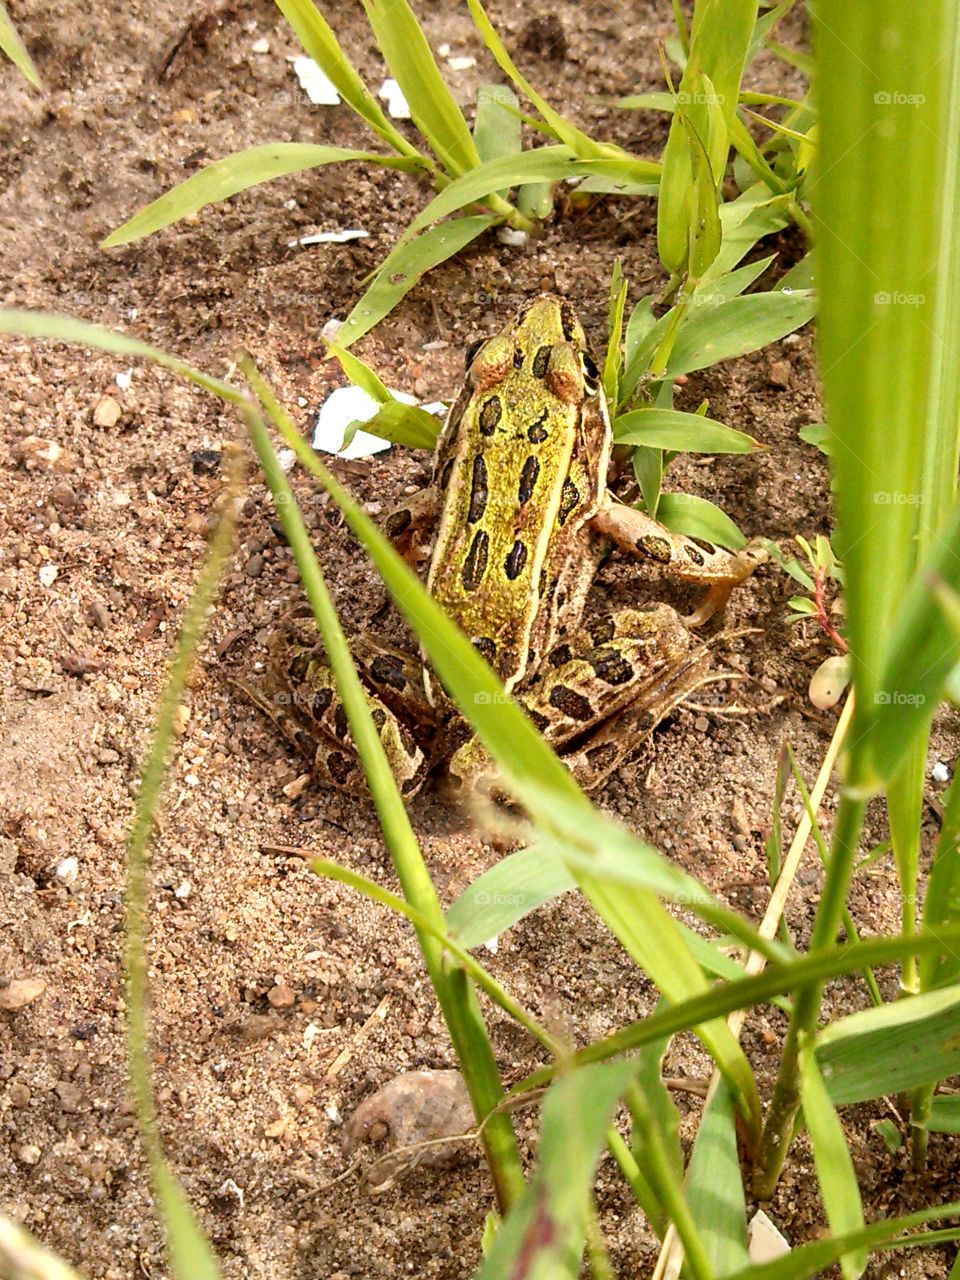 Frog in my garden. This guy visited my garden